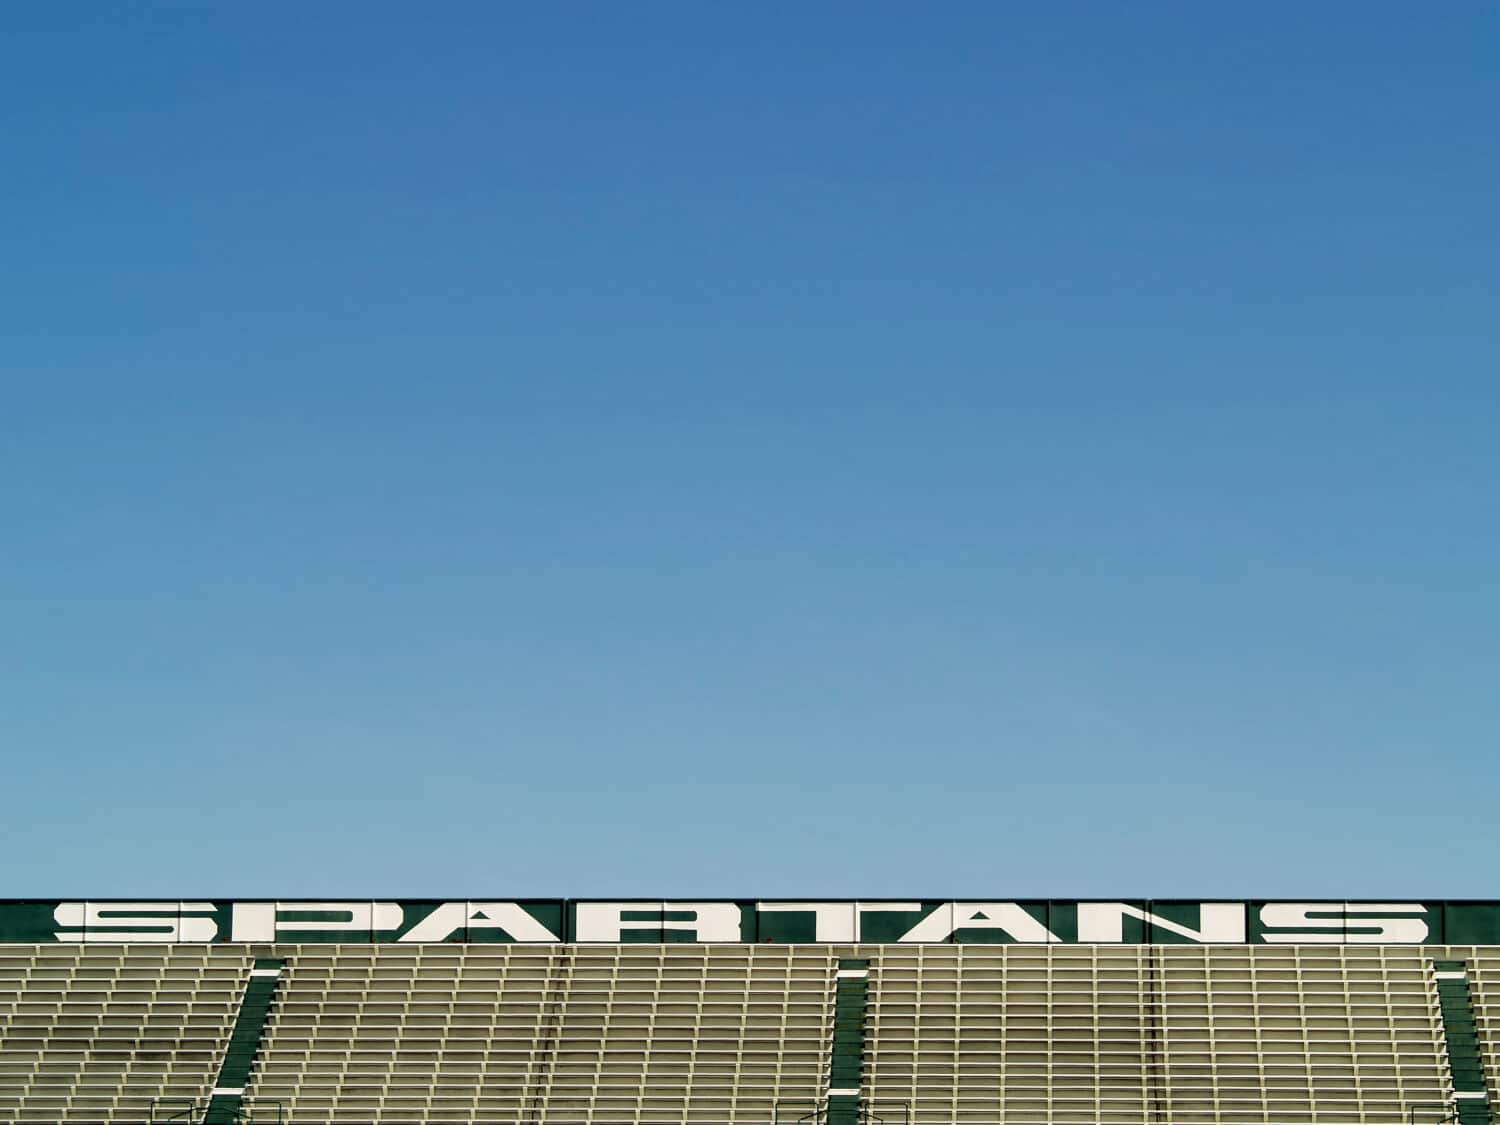 empty bleachers in Spartans sports stadium